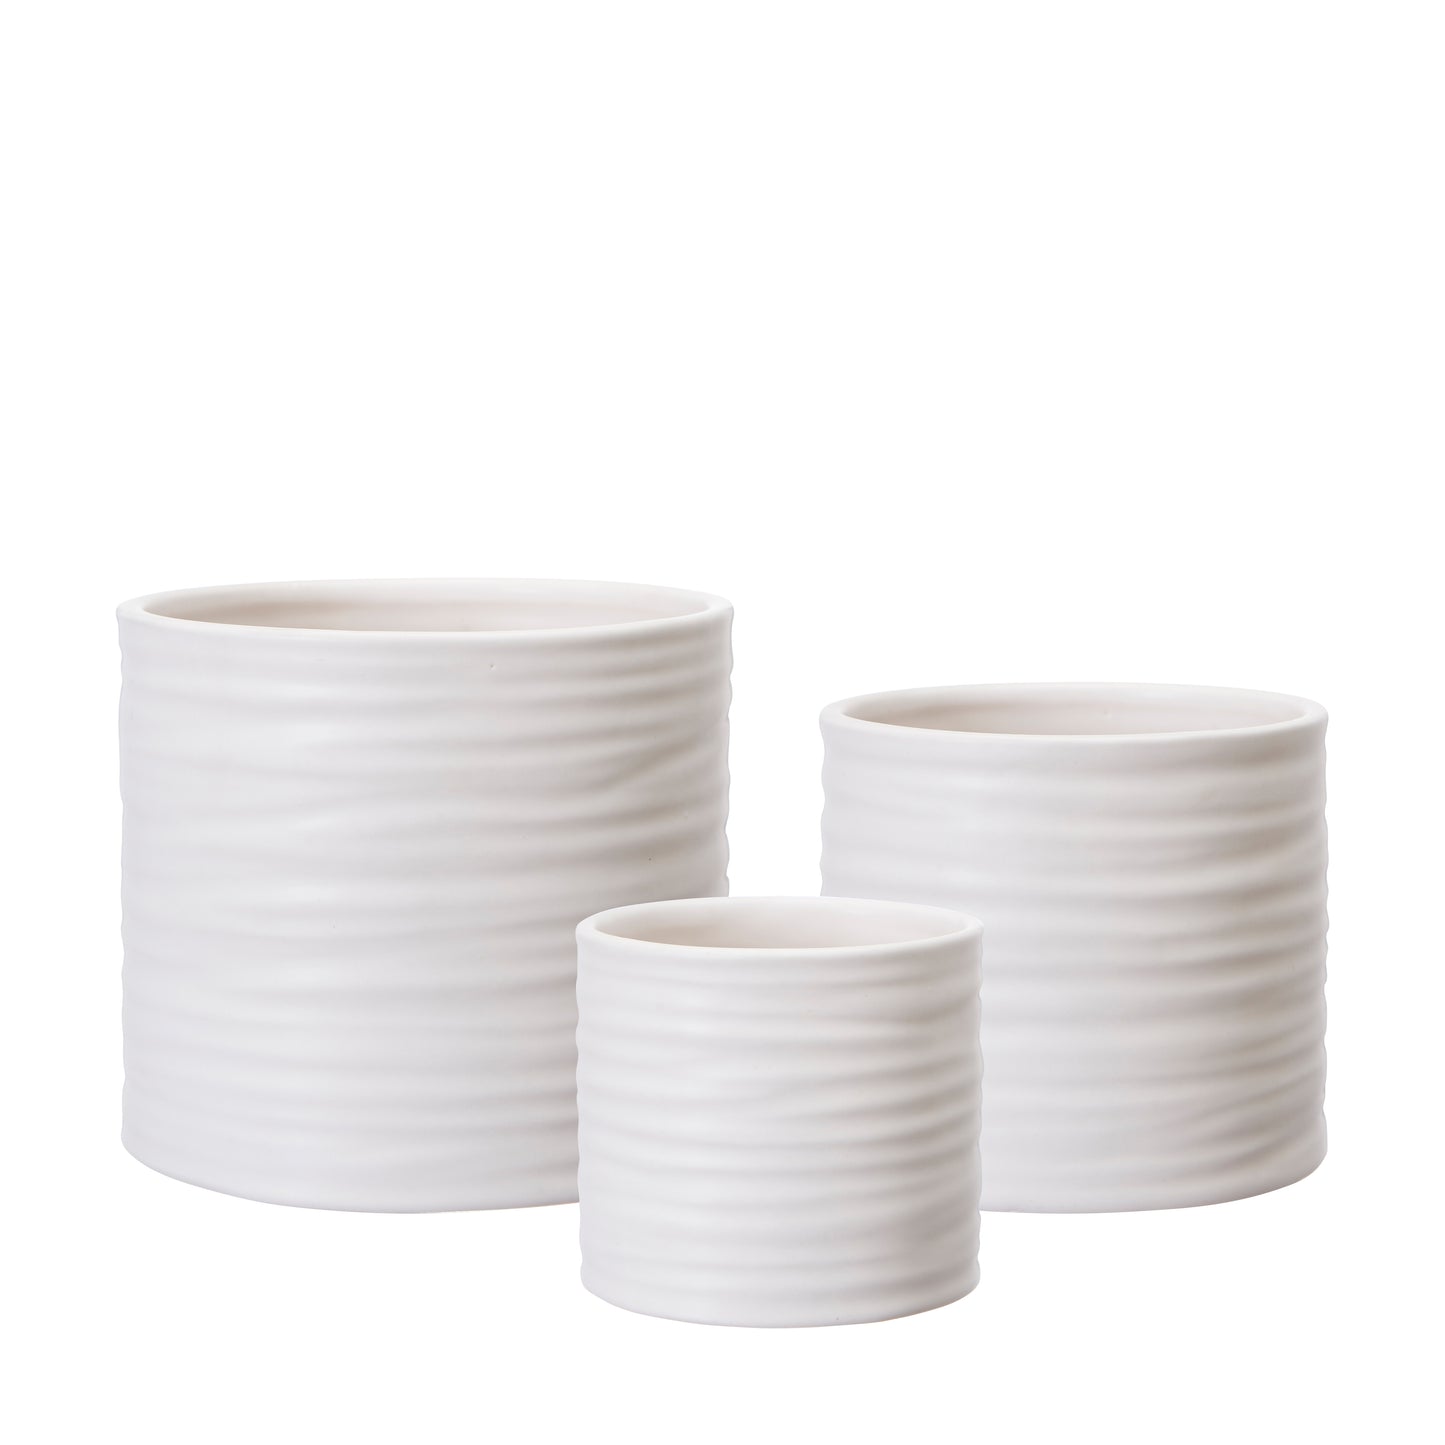 Wikholm Lisen Ceramic PLant Pot, Matt White